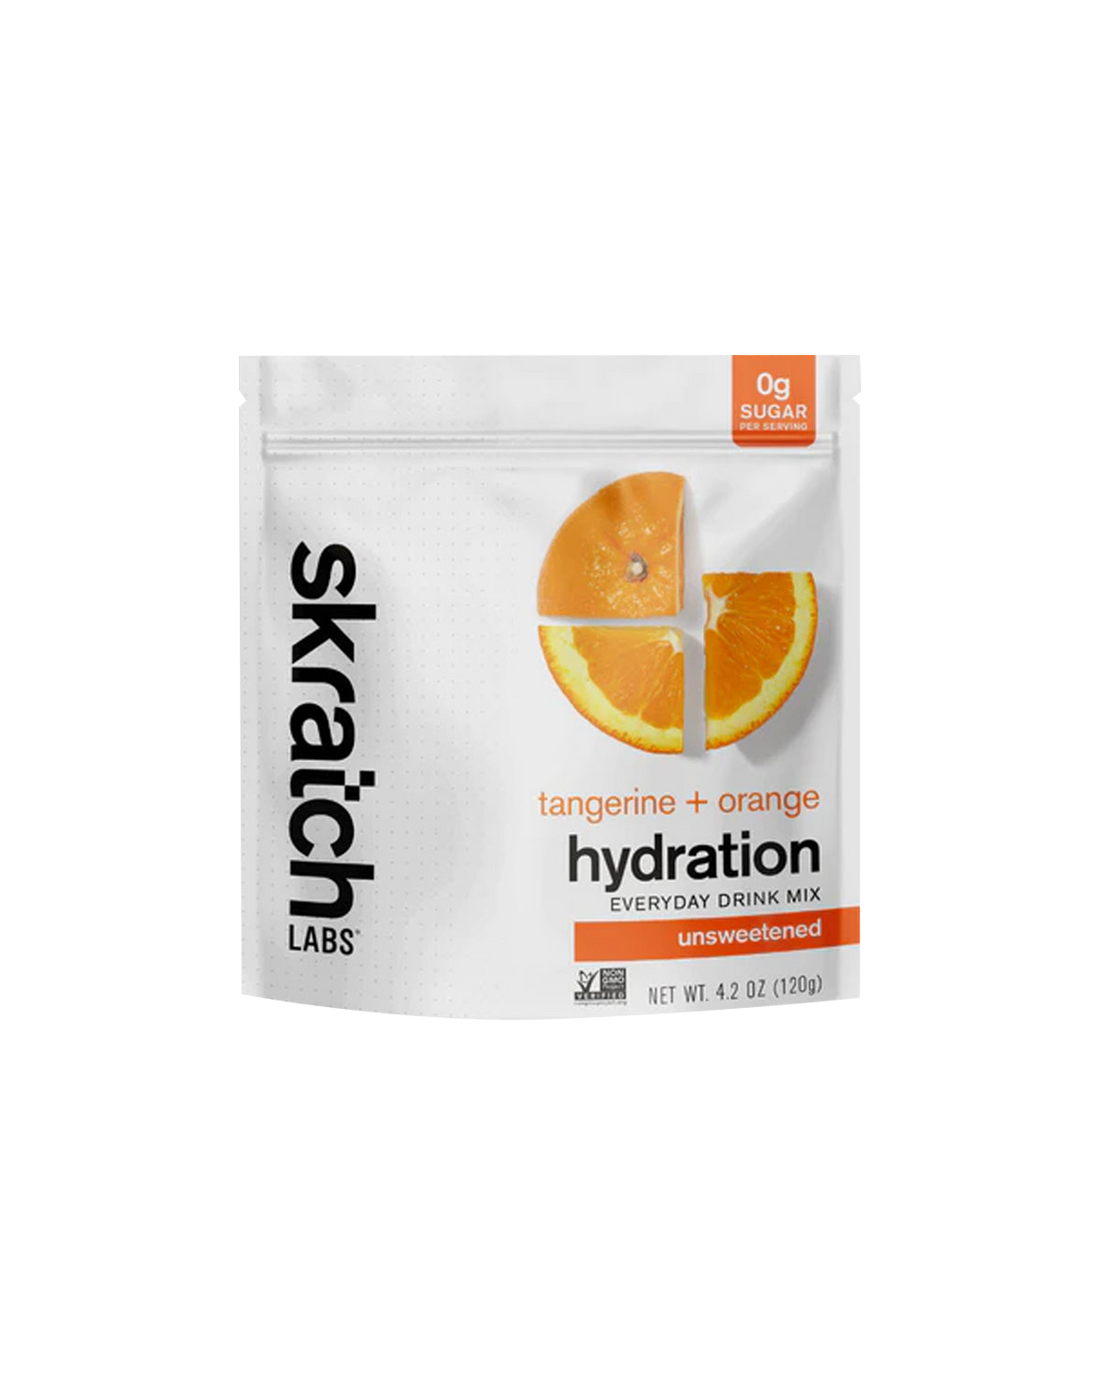 Skratch Labs Everyday Drink Mix - Tangerine + Orange